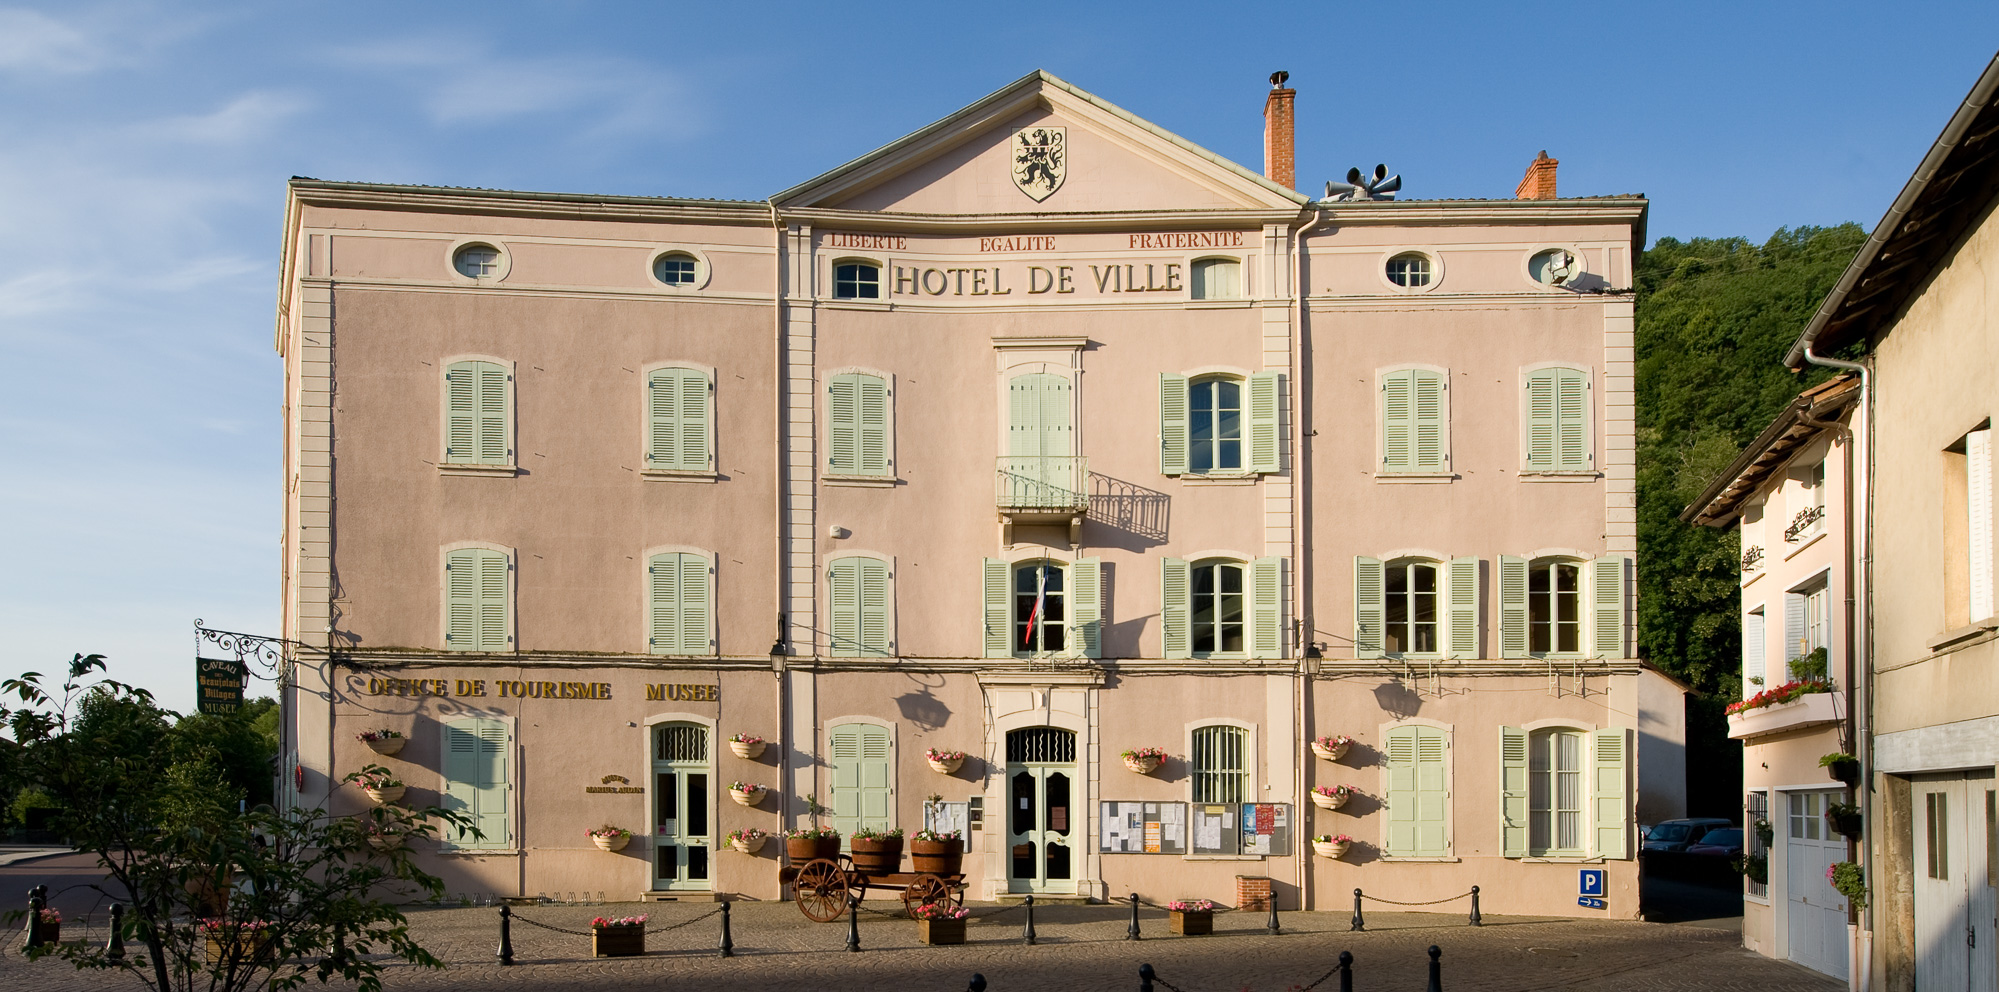 Beaujeu. Hôtel de ville et Musée Marius Audin.